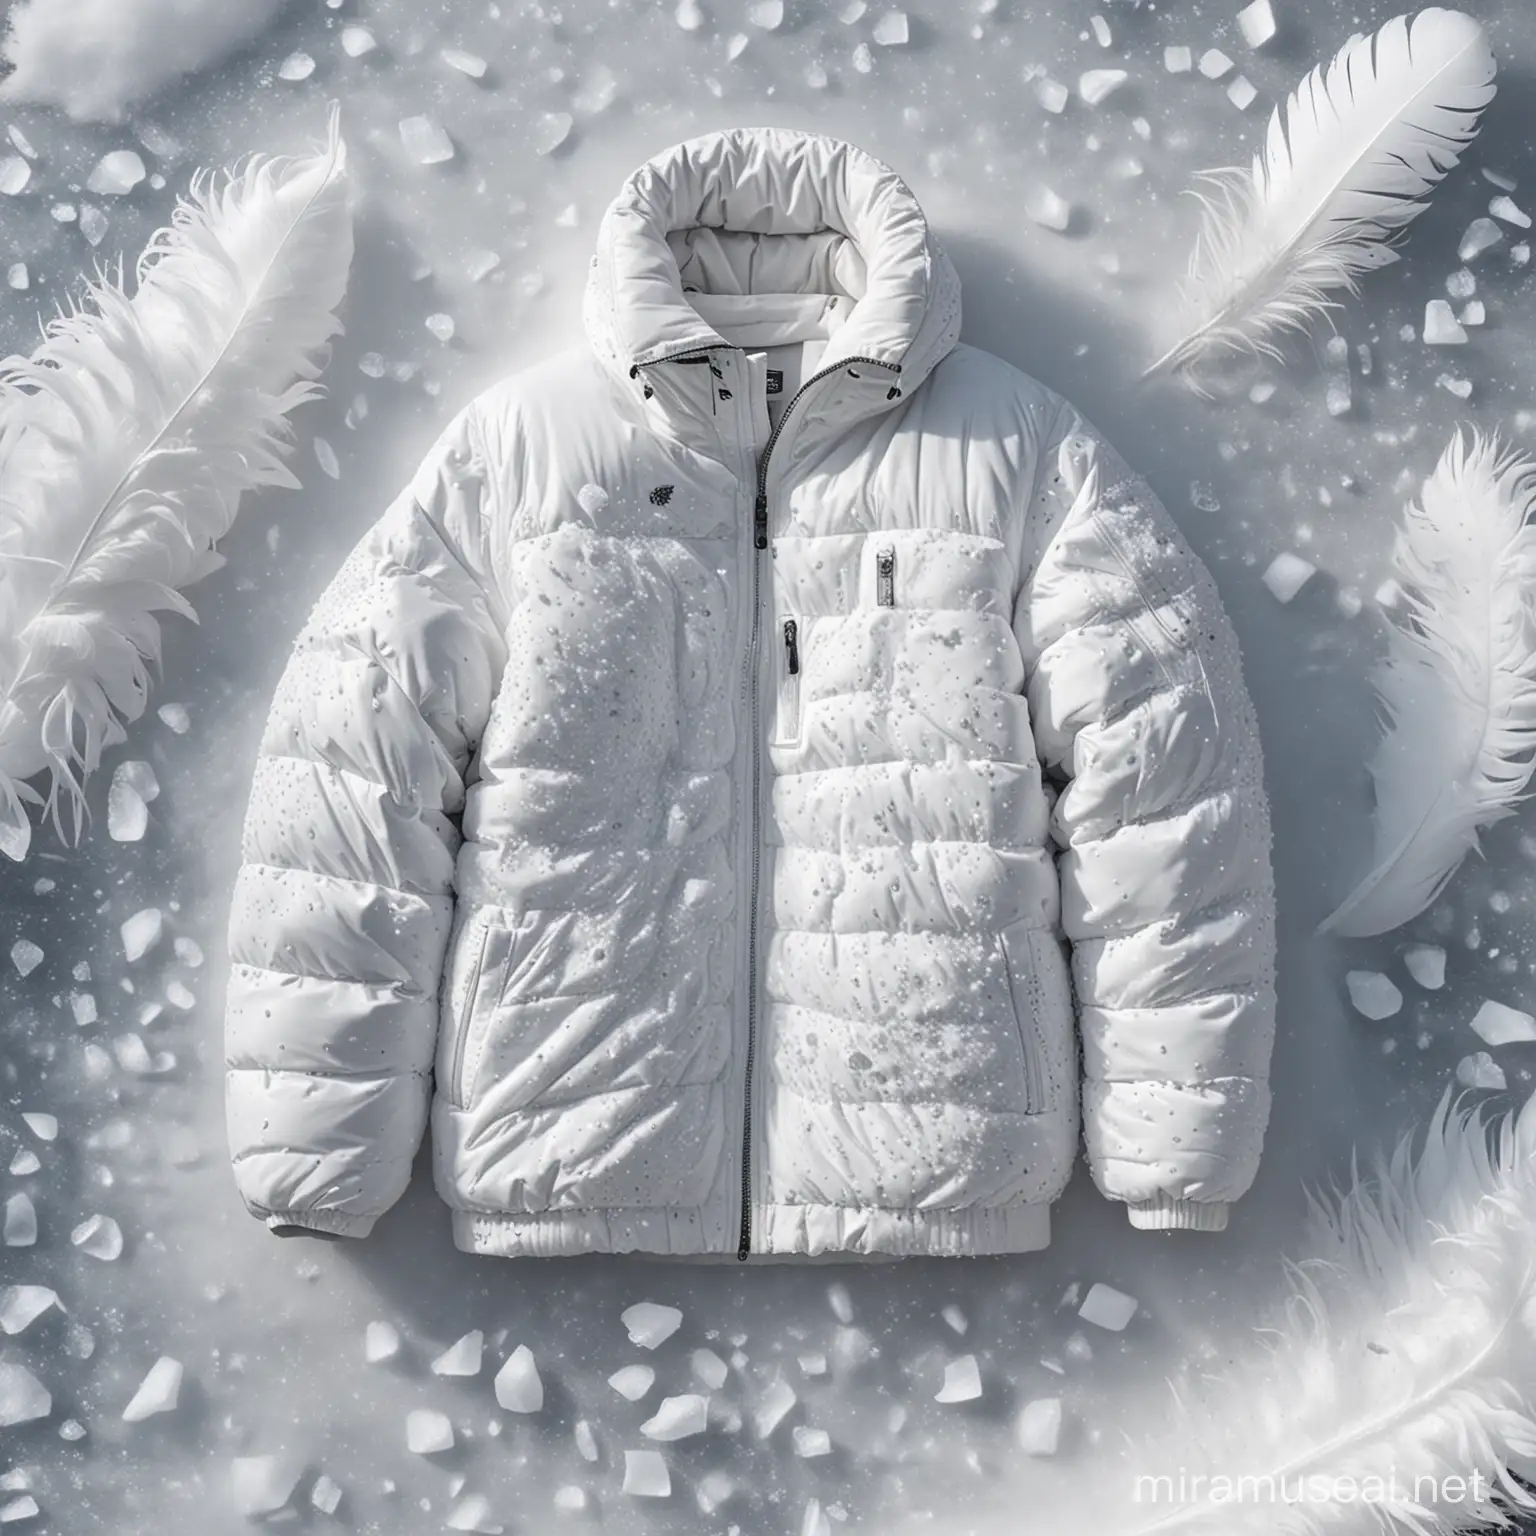 由白色羽绒服铺底形象化为冰雪天，鹅毛形象为大雪，营造冰天雪地的场景